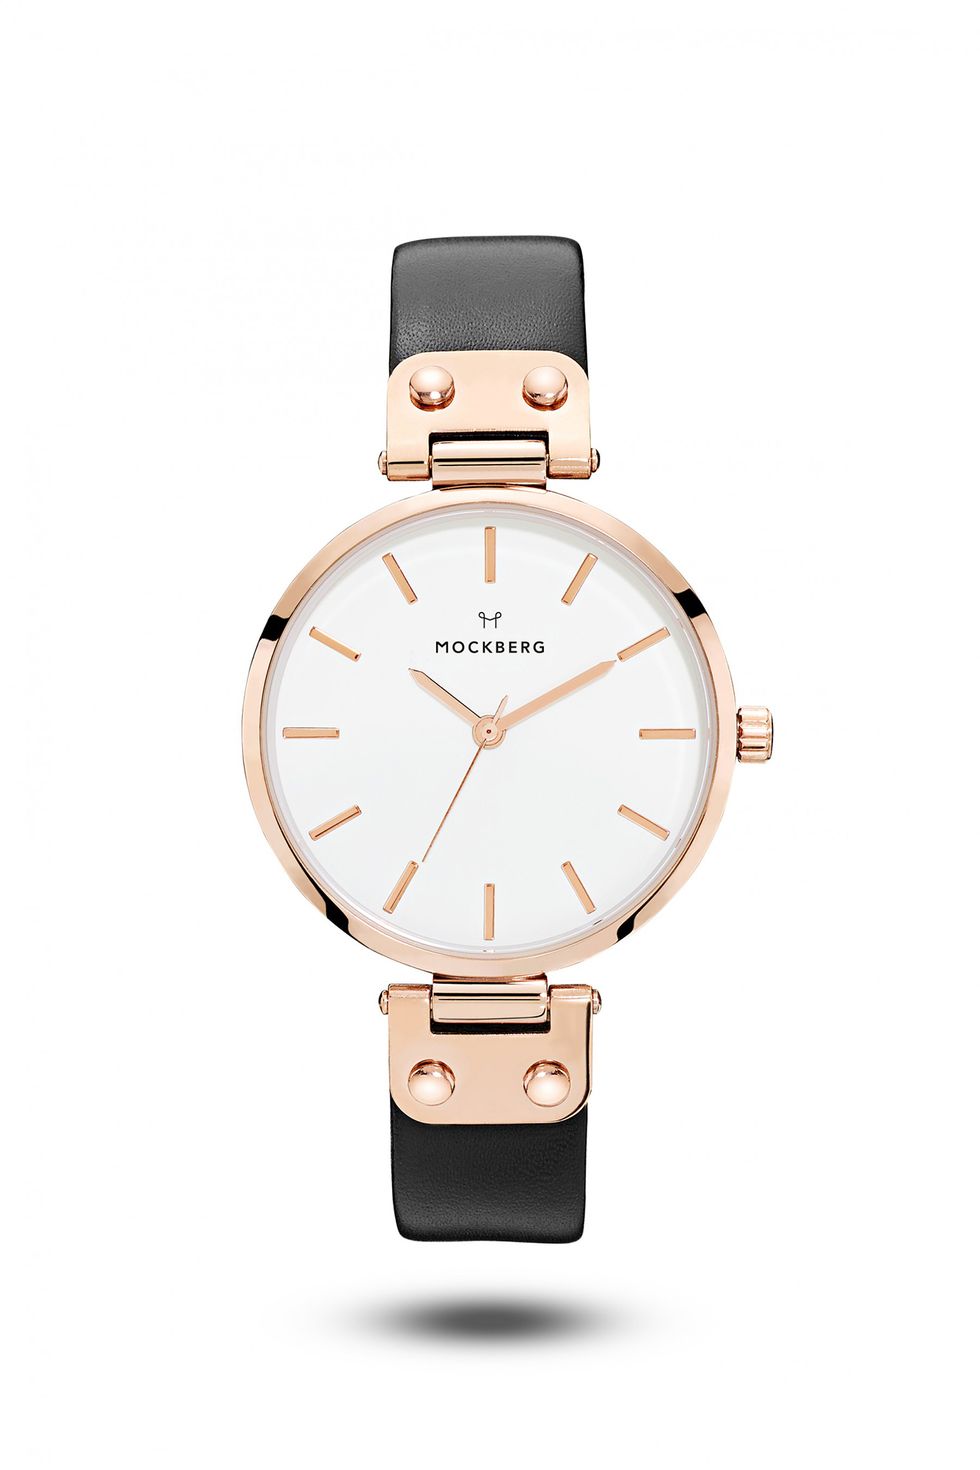 Metti al polso un orologio elegante per una ragione squisitamente estetica, con poco risvegli look troppo casual. 